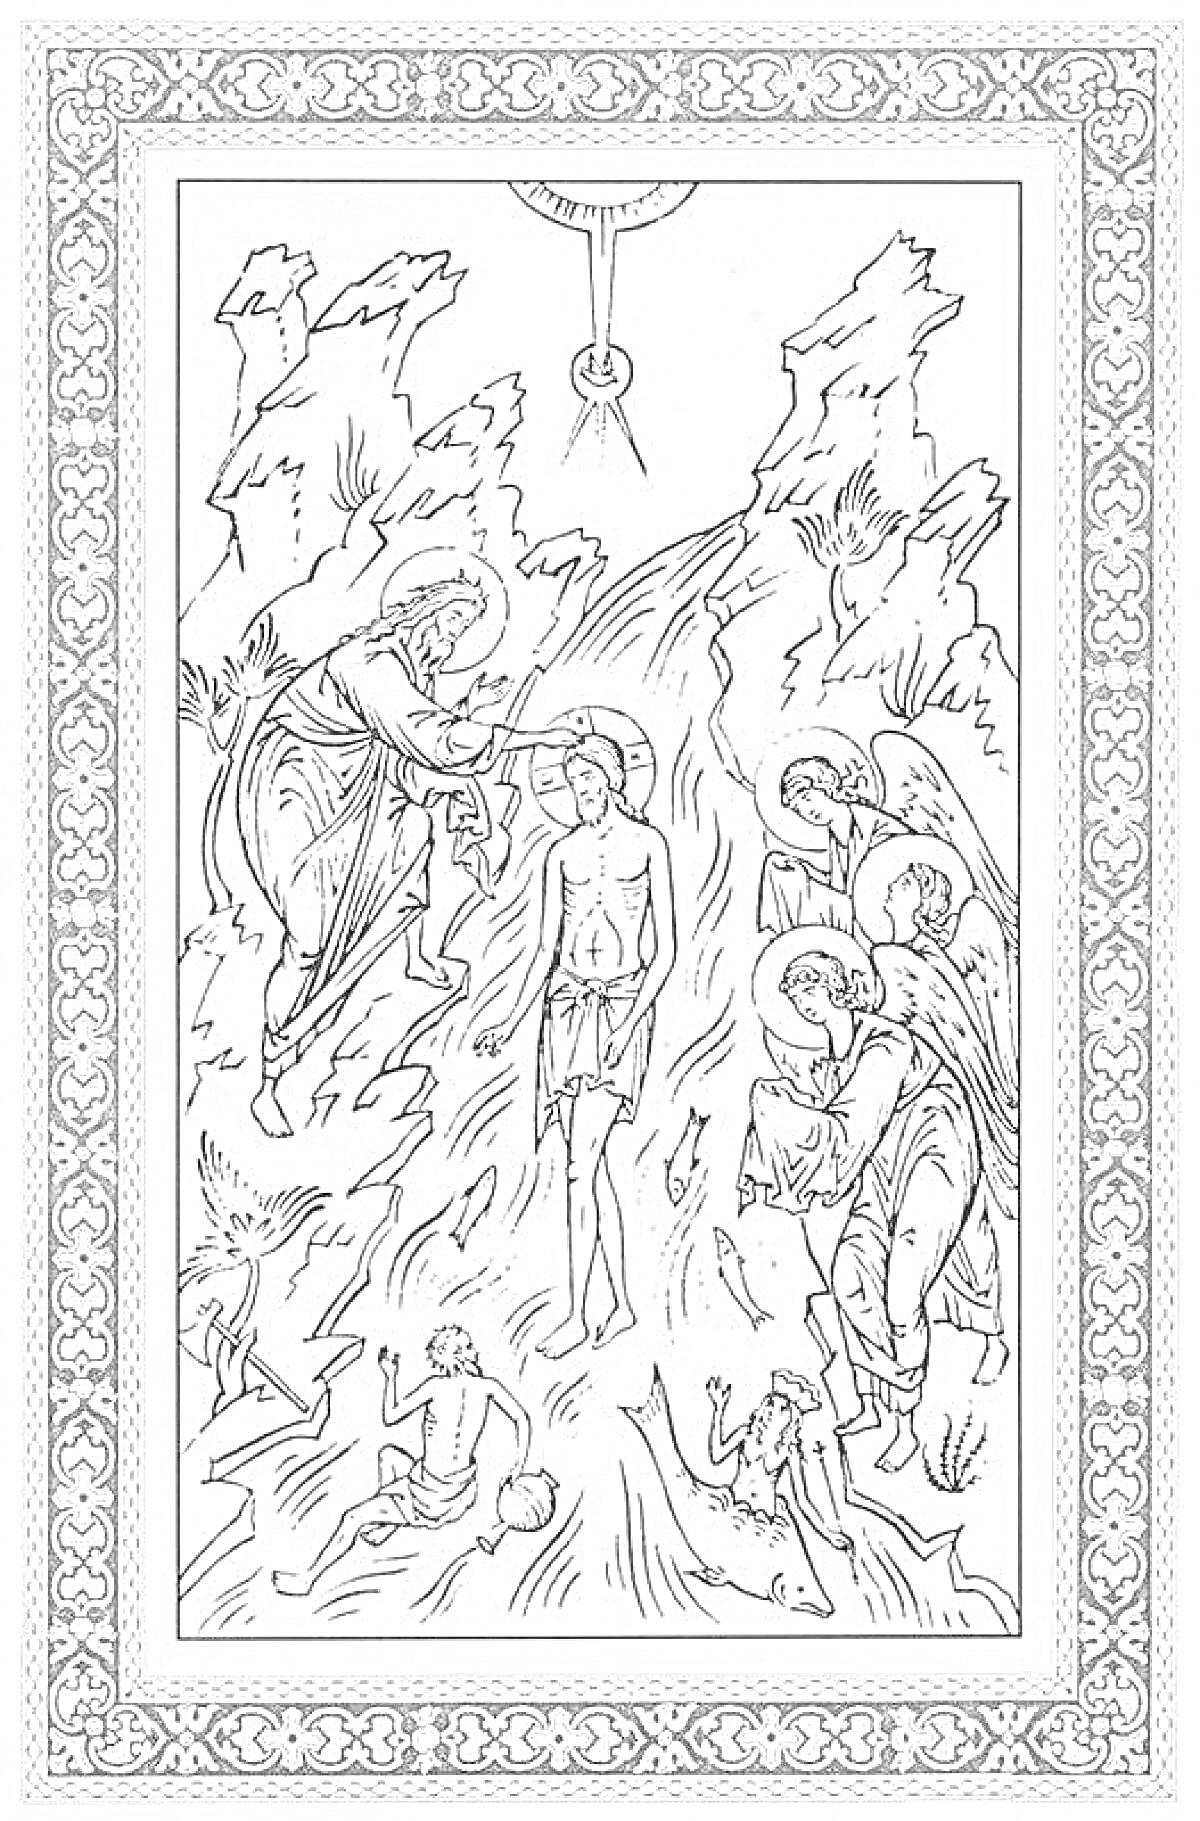 Крещение Господне, с изображением Иоанна Крестителя, Иисуса Христа, ангелов и реку Иордан, в декоративной рамке